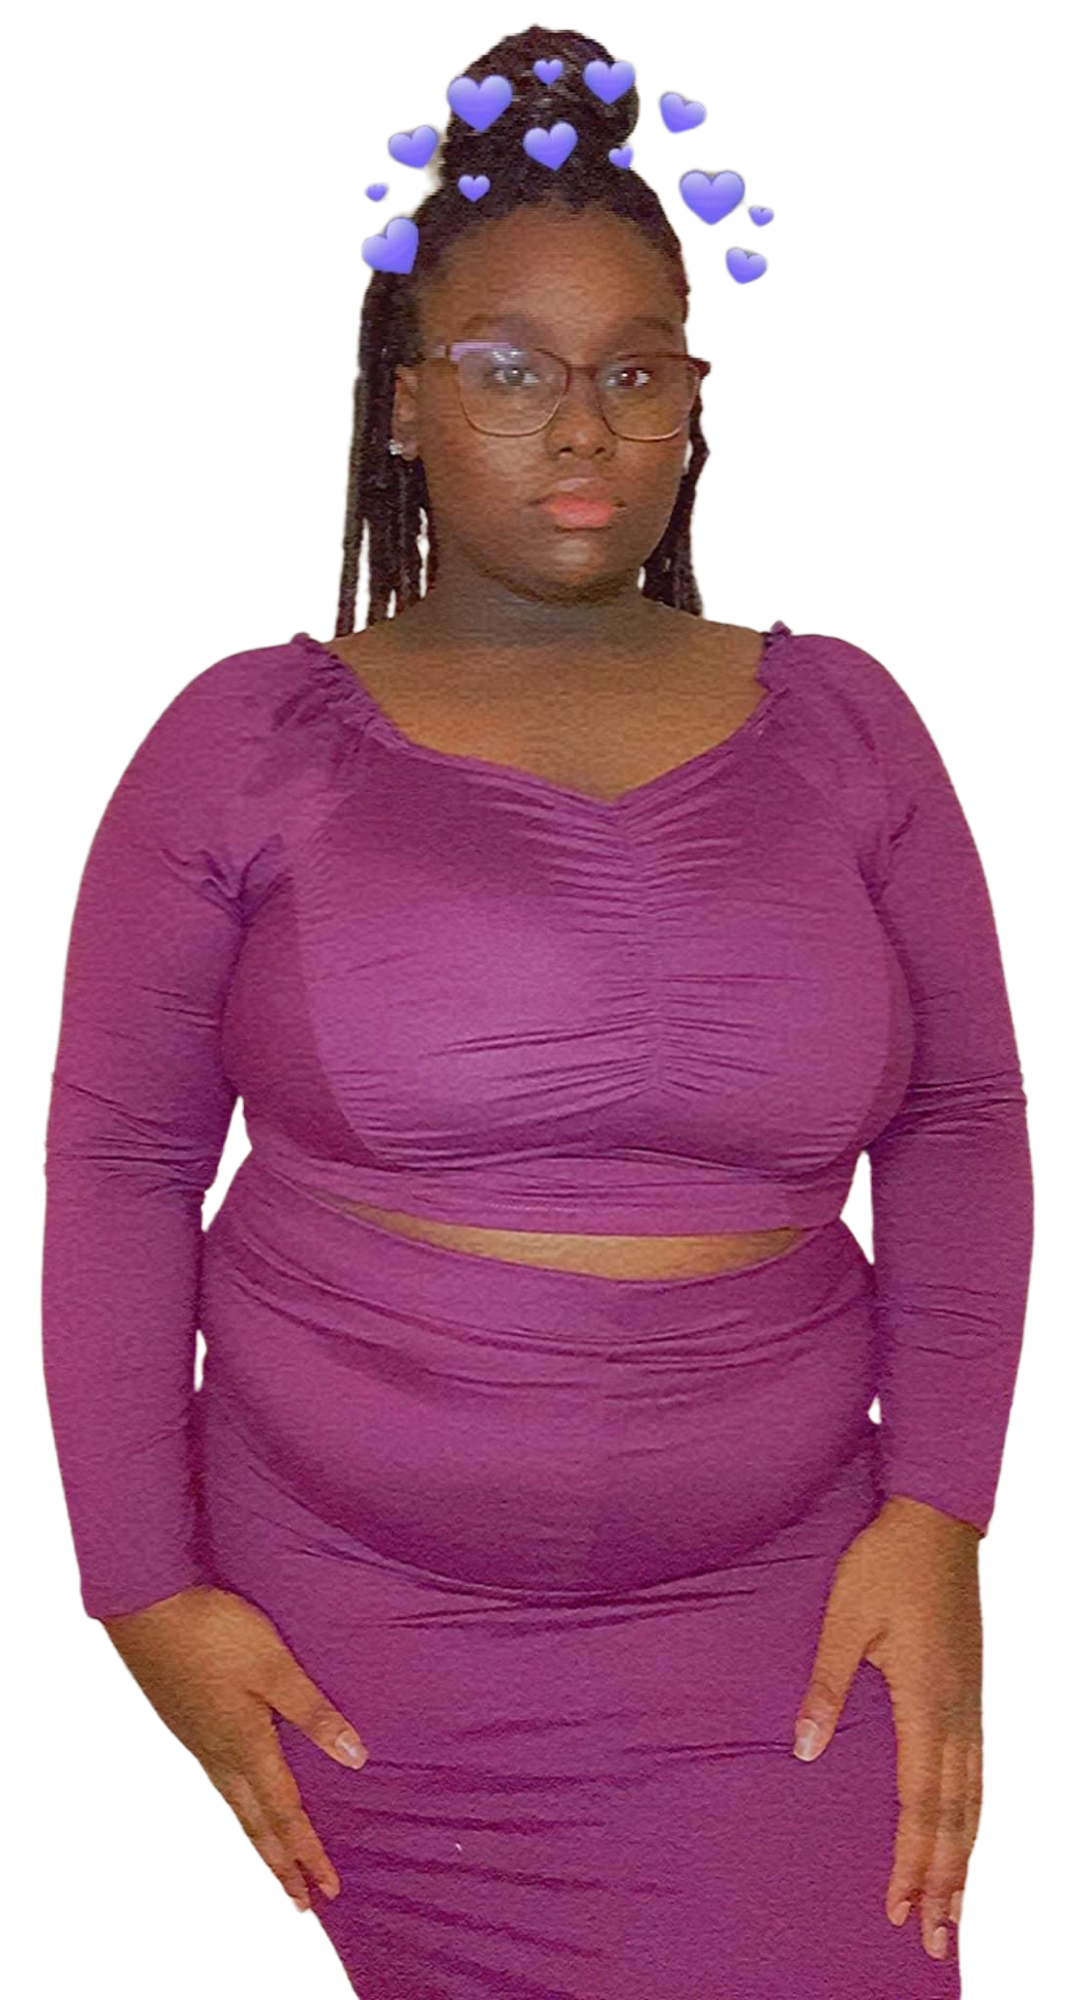 Purple 2 Piece Top & Skirt Set